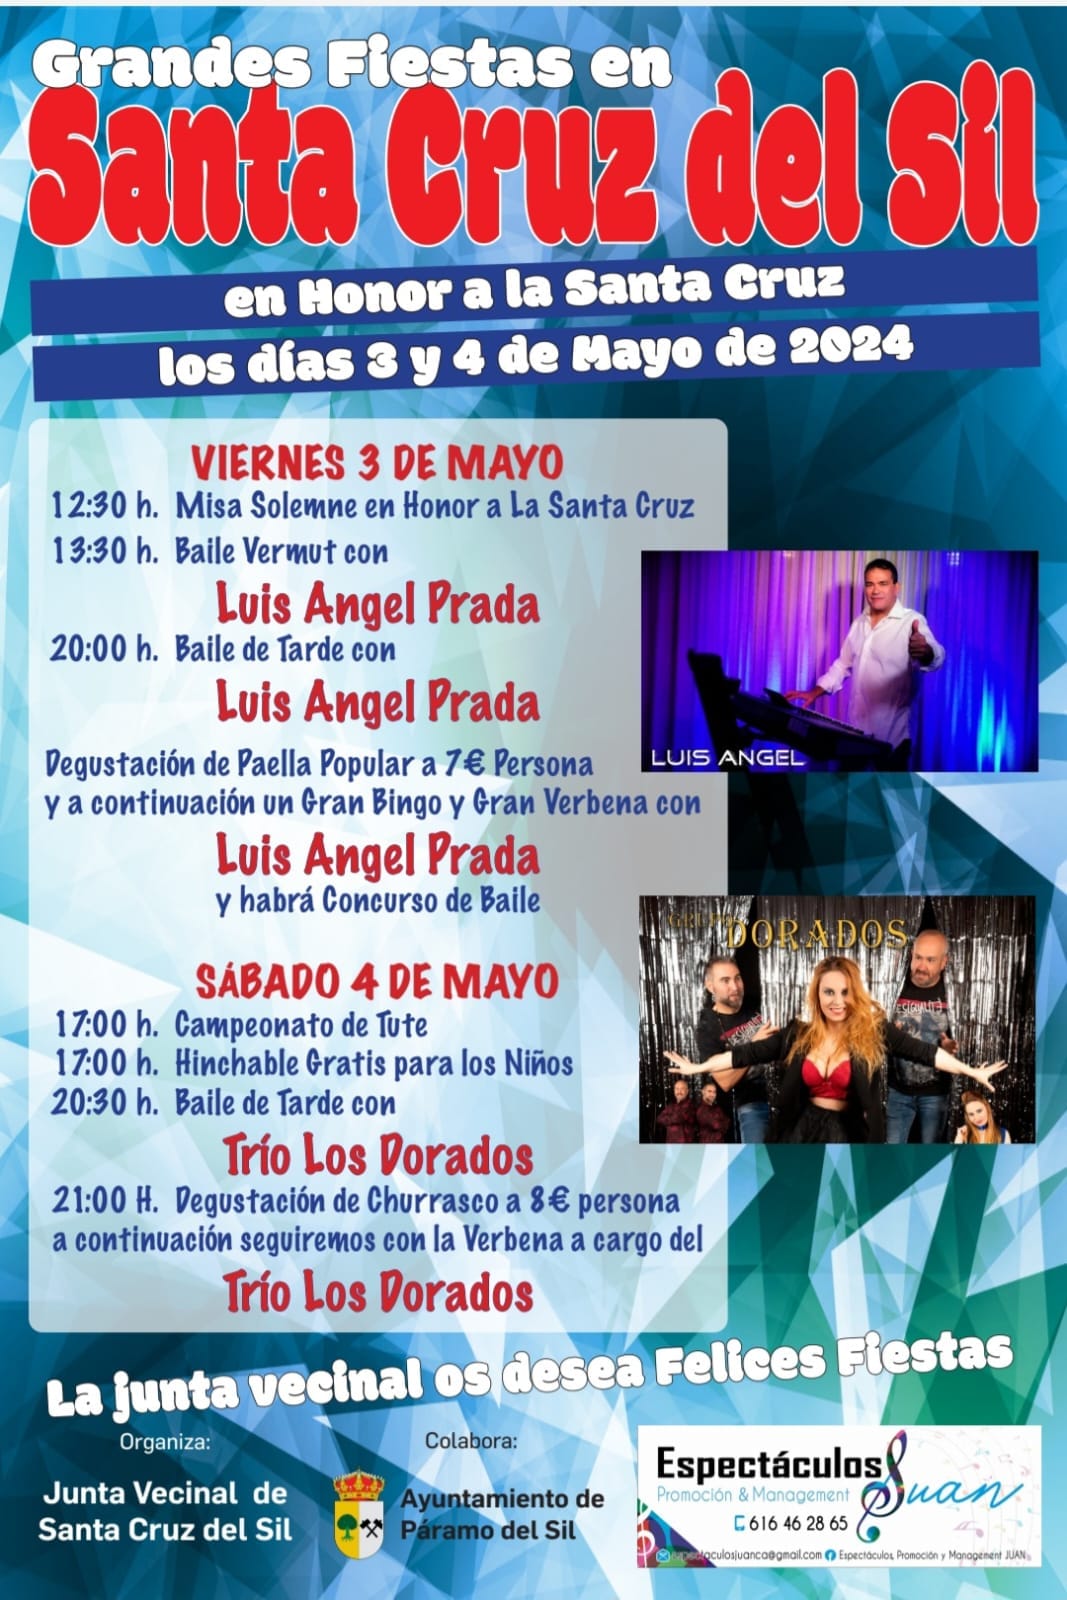 Santa Cruz del Sil anuncia sus fiestas el 3 y 4 de mayo, Paella, misa y música para disfrutar 2